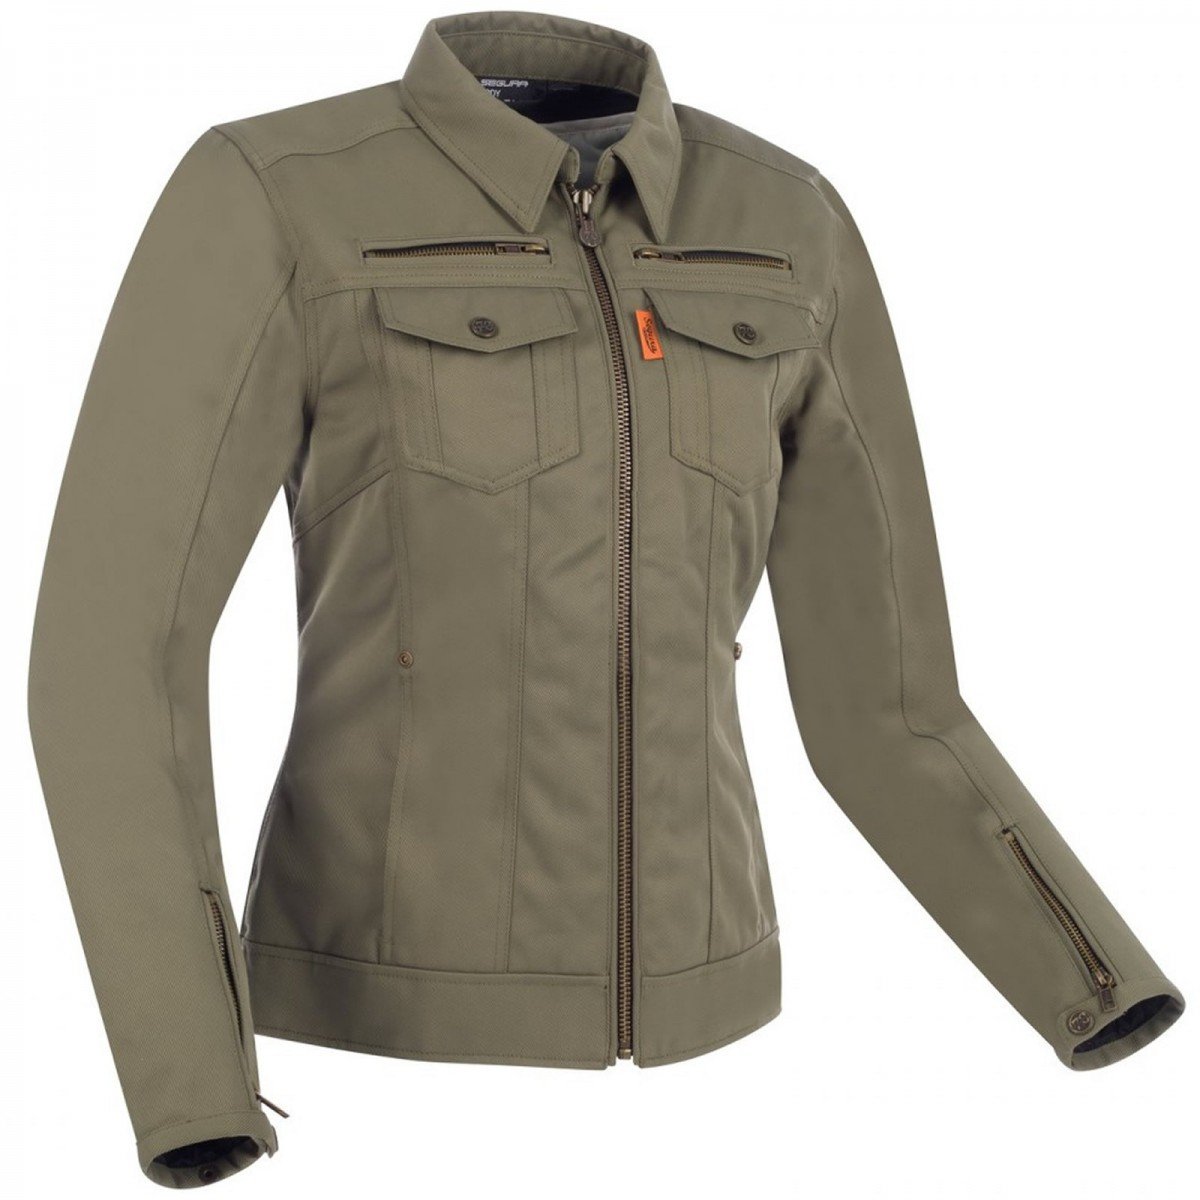 Image of Segura Lady Patrol Jacket Khaki Size T6 ID 3660815163221